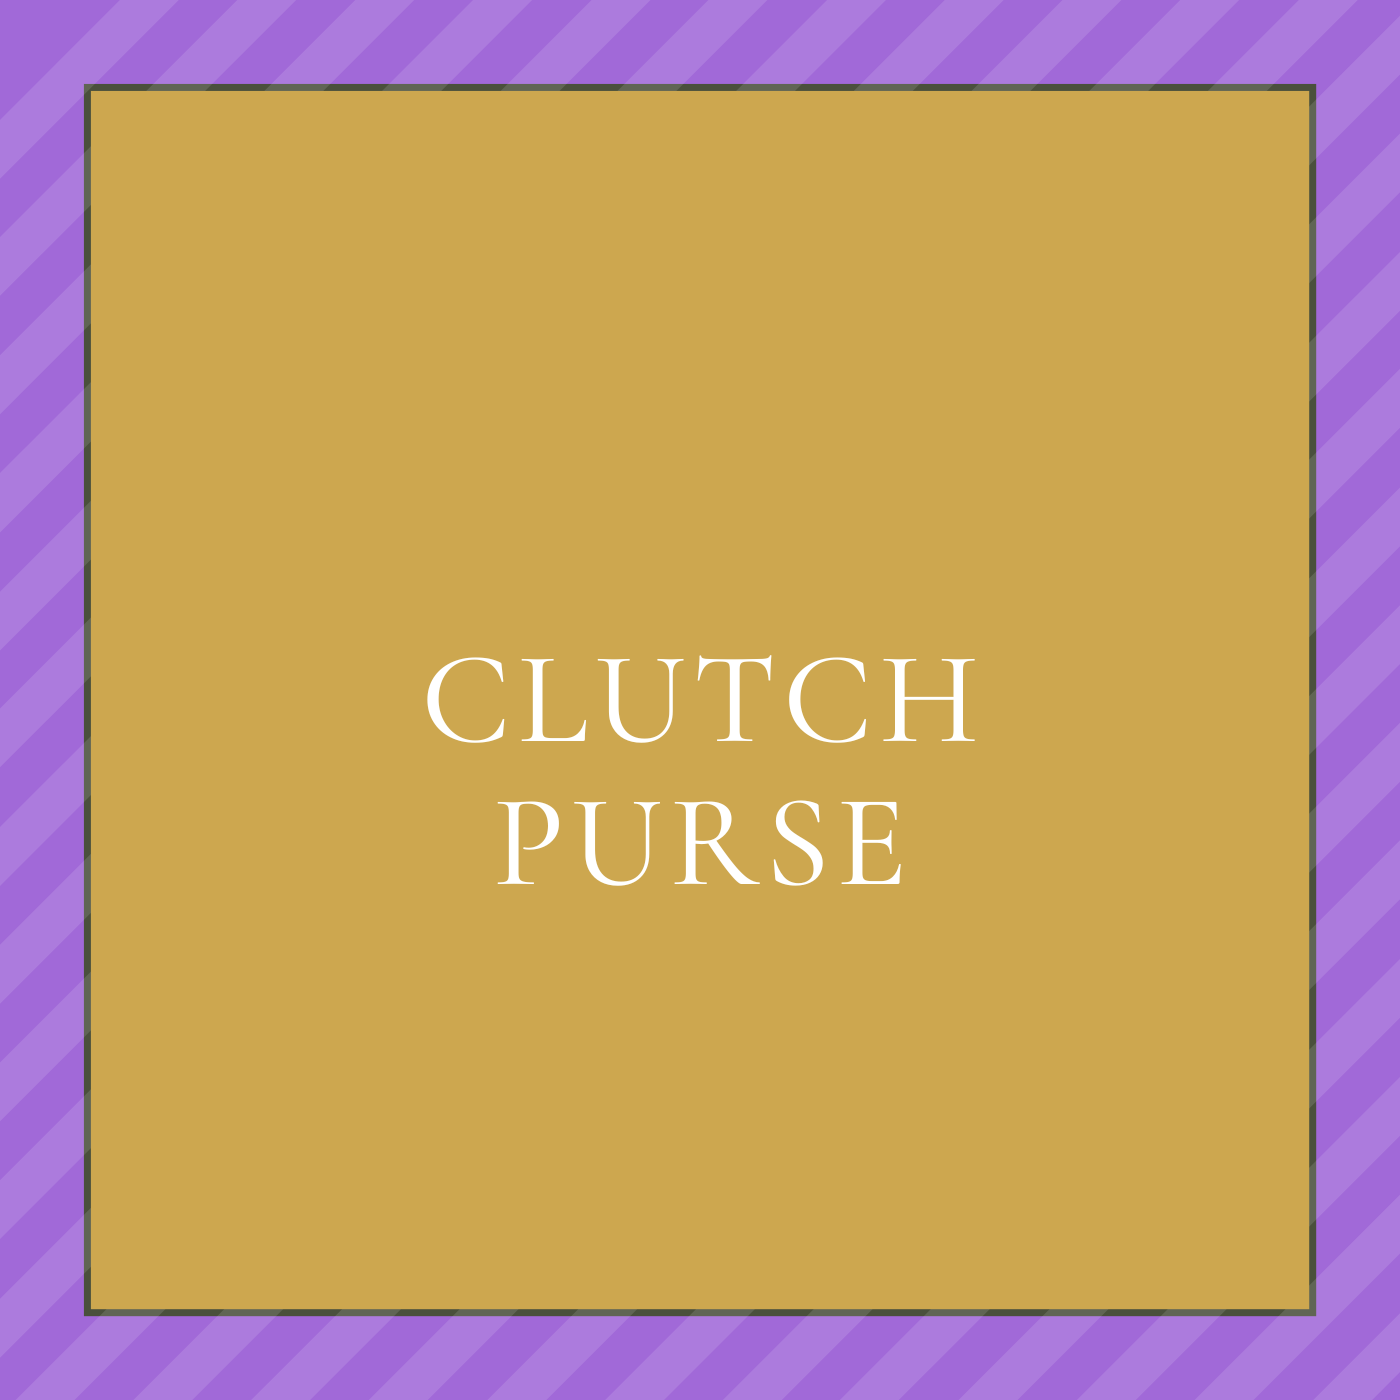 Clutch Purse